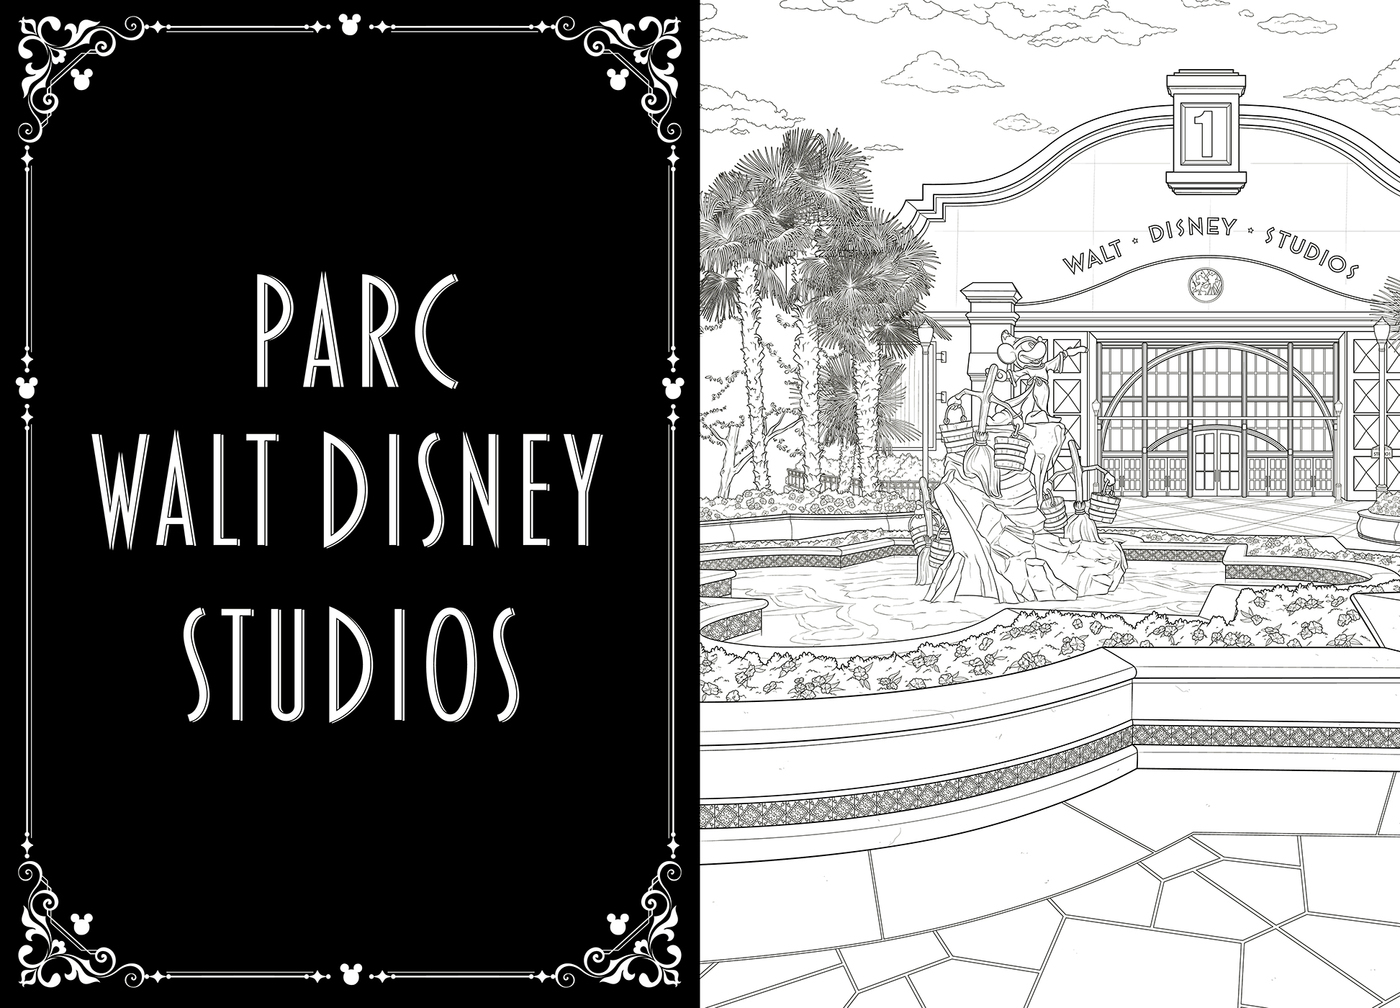 Hachette Collection - Livre de 90 coloriages Disneyland Paris - le palais des goodies